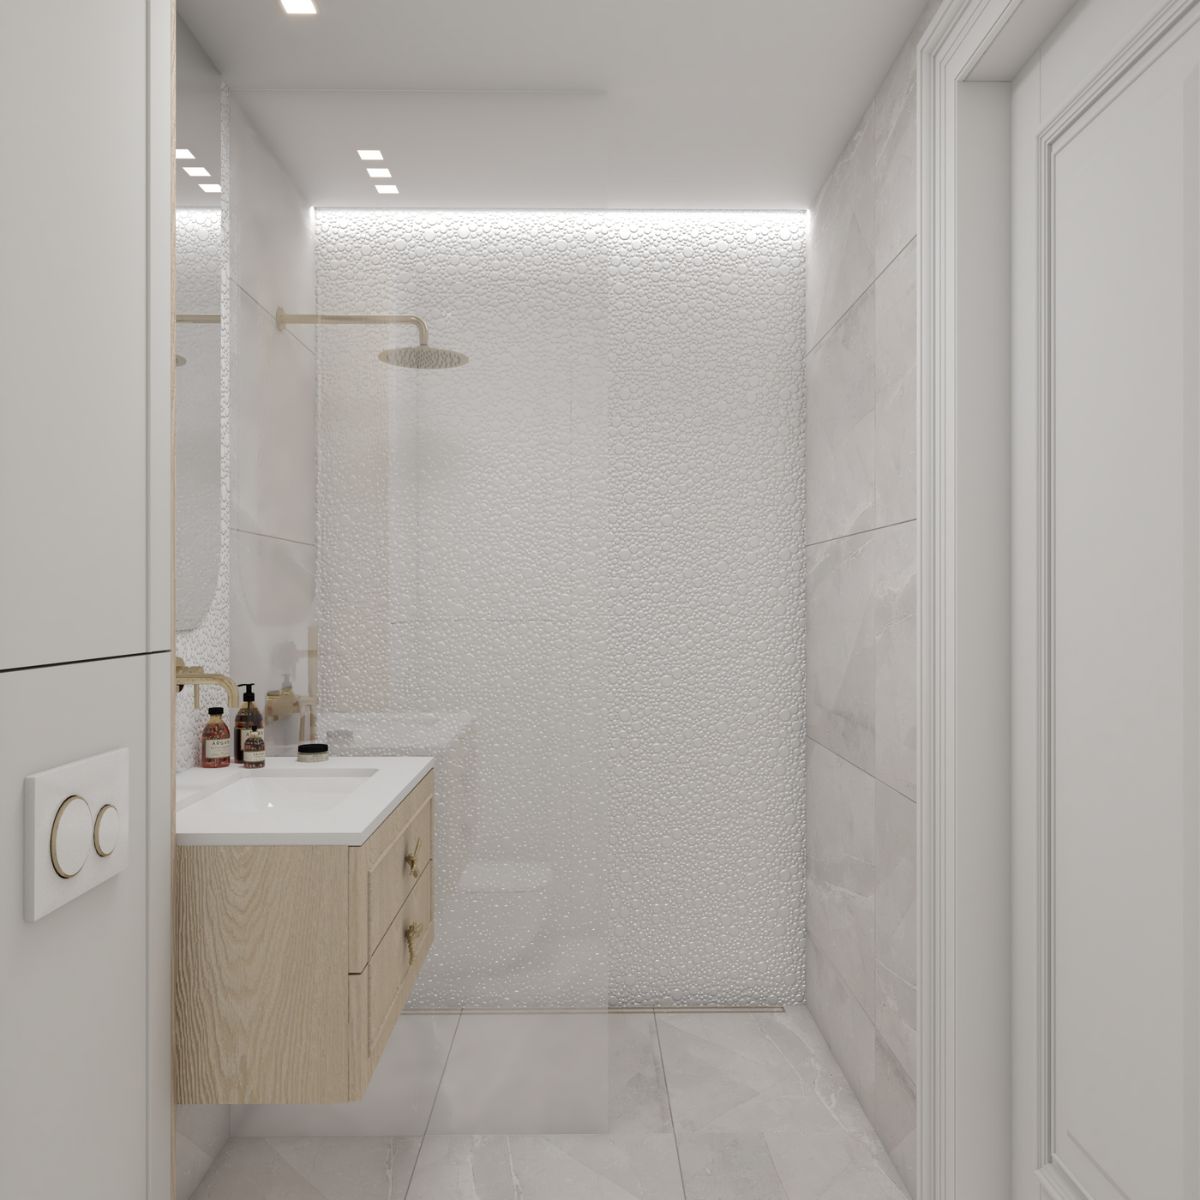 Prysznic w łazience w mieszkaniu na bydgoskim osiedlu